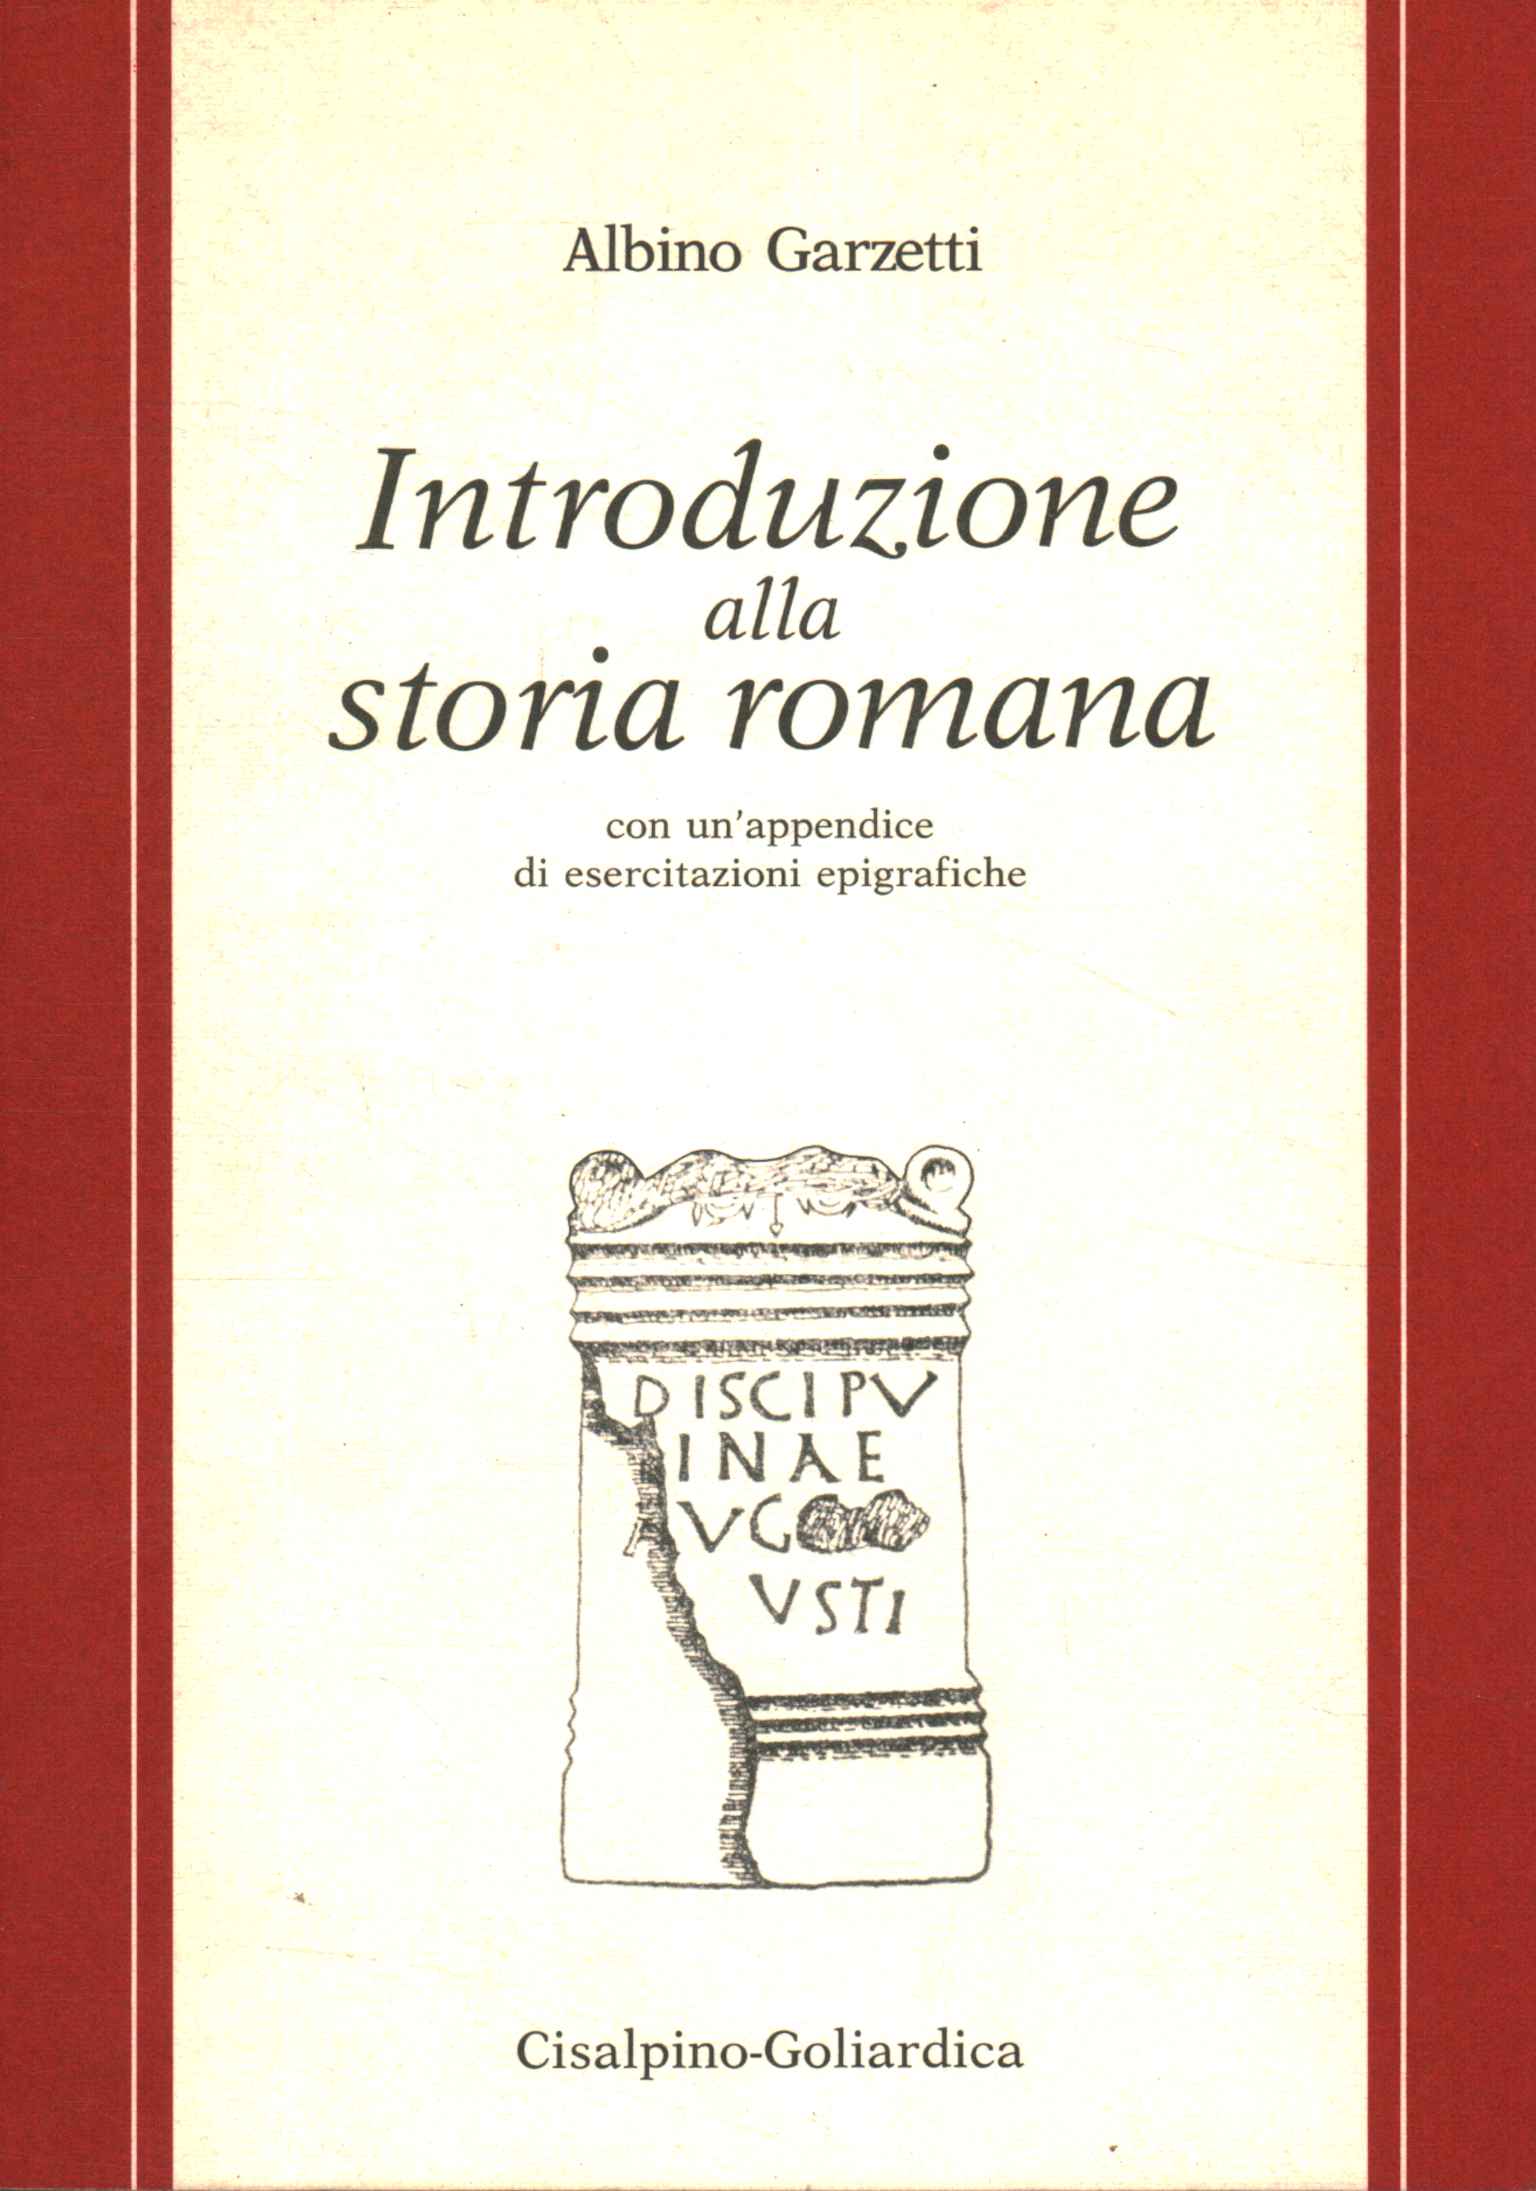 Introduction à l'histoire romaine